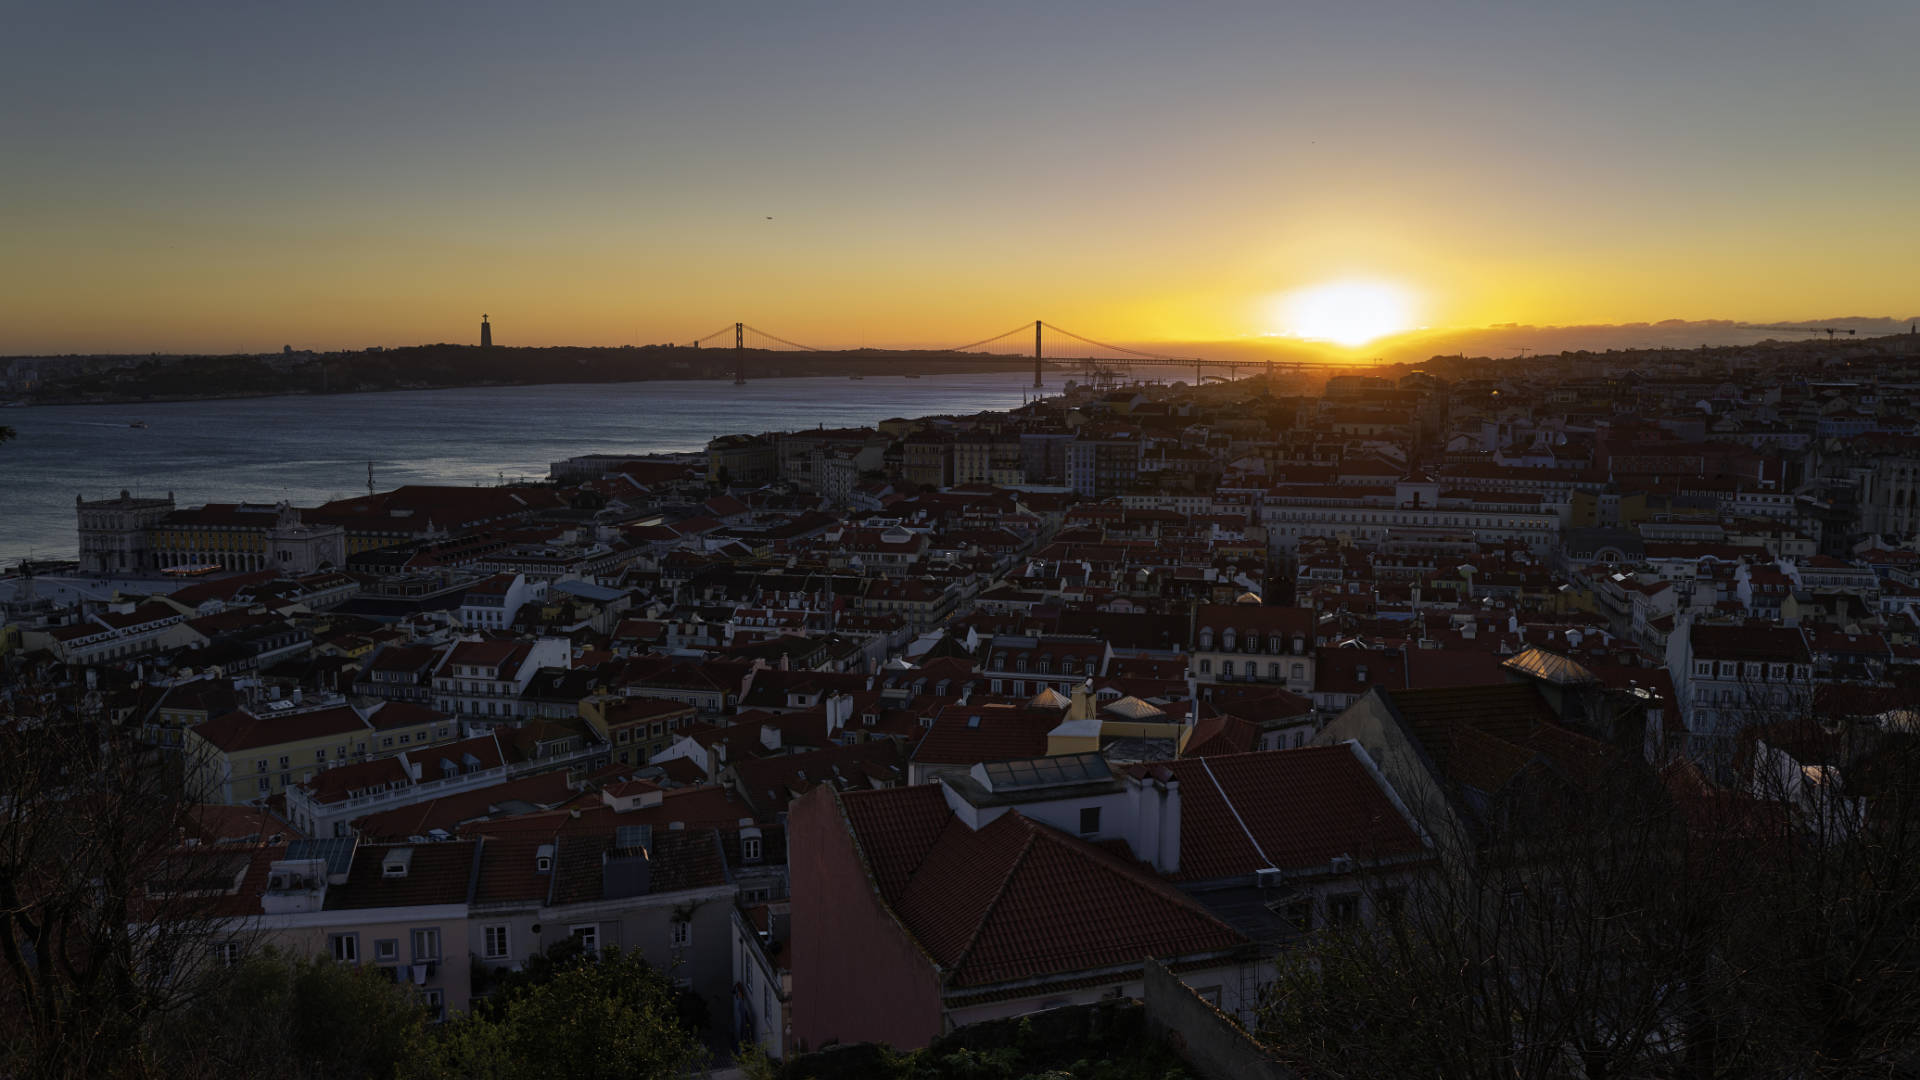 Sonnenuntergang am Castelo de São Jorge über Lissabon.